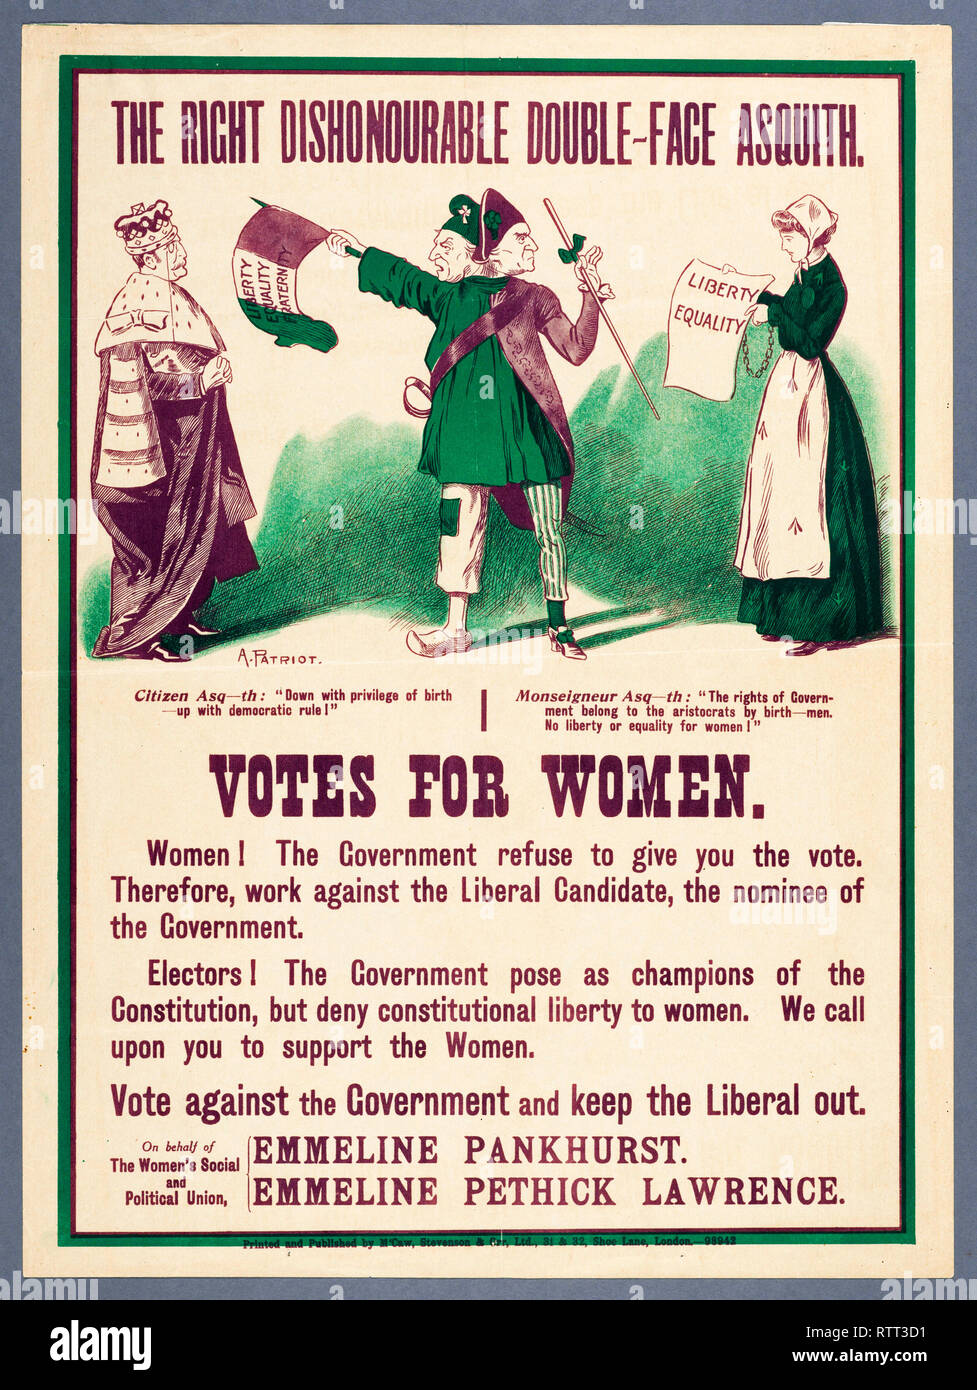 Il diritto disonorevole Double-Face Asquith, voti per le donne poster, womens suffragio, c. 1903-1926, Regno Unito Foto Stock